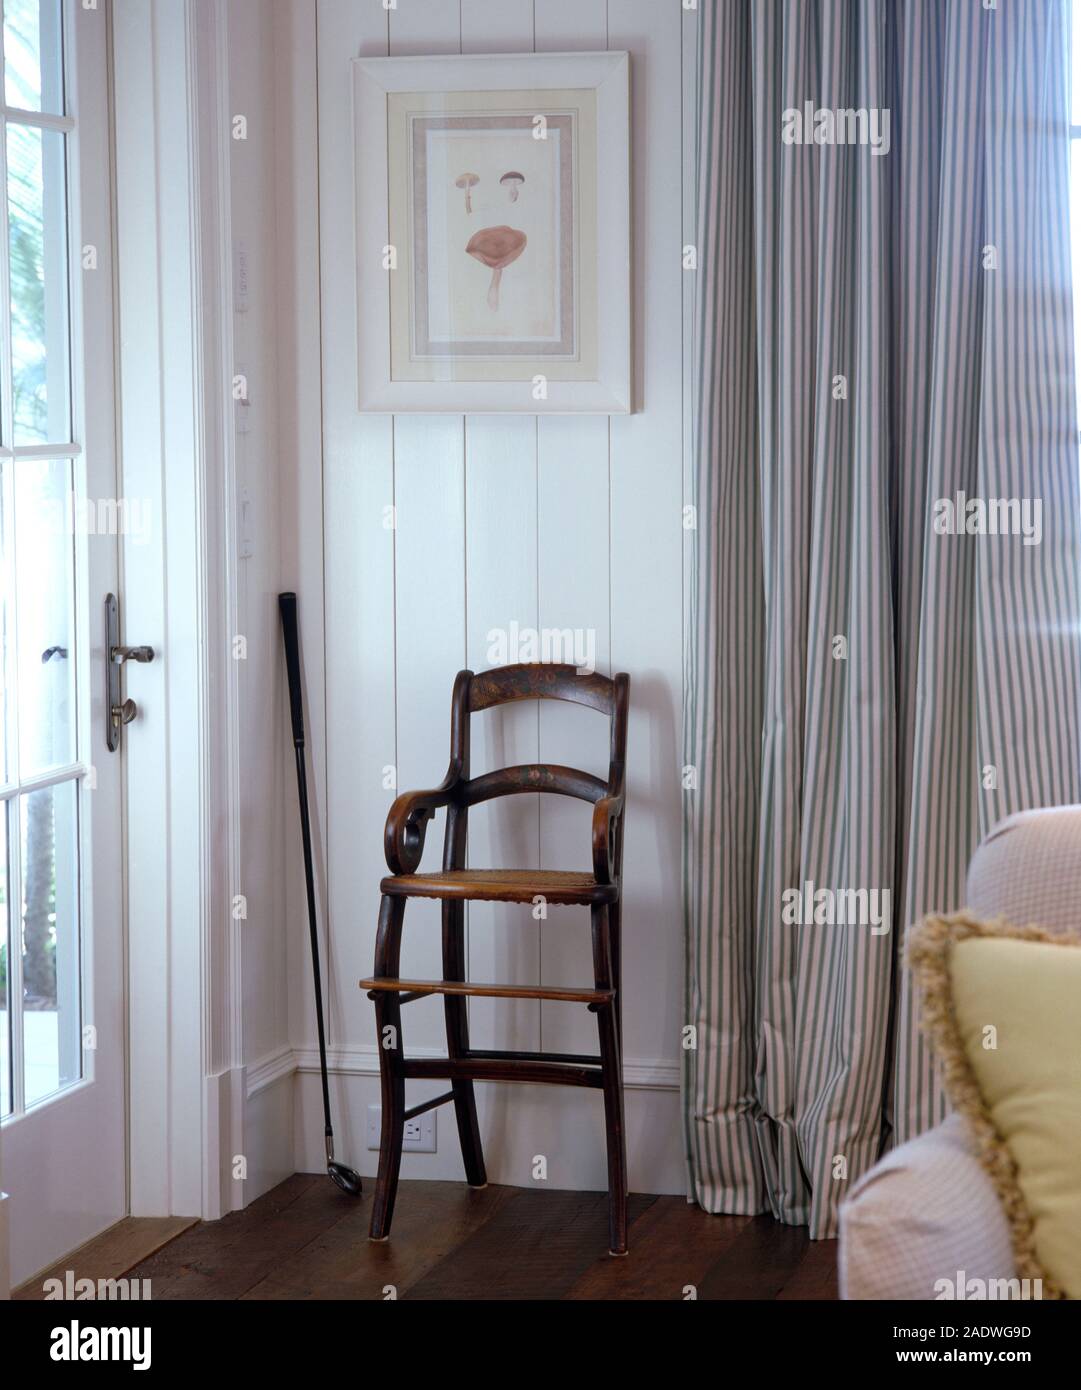 Chaise haute enfant's antique contre un mur lambrissé blanc blanc dans un salon avec des rideaux à rayures Banque D'Images